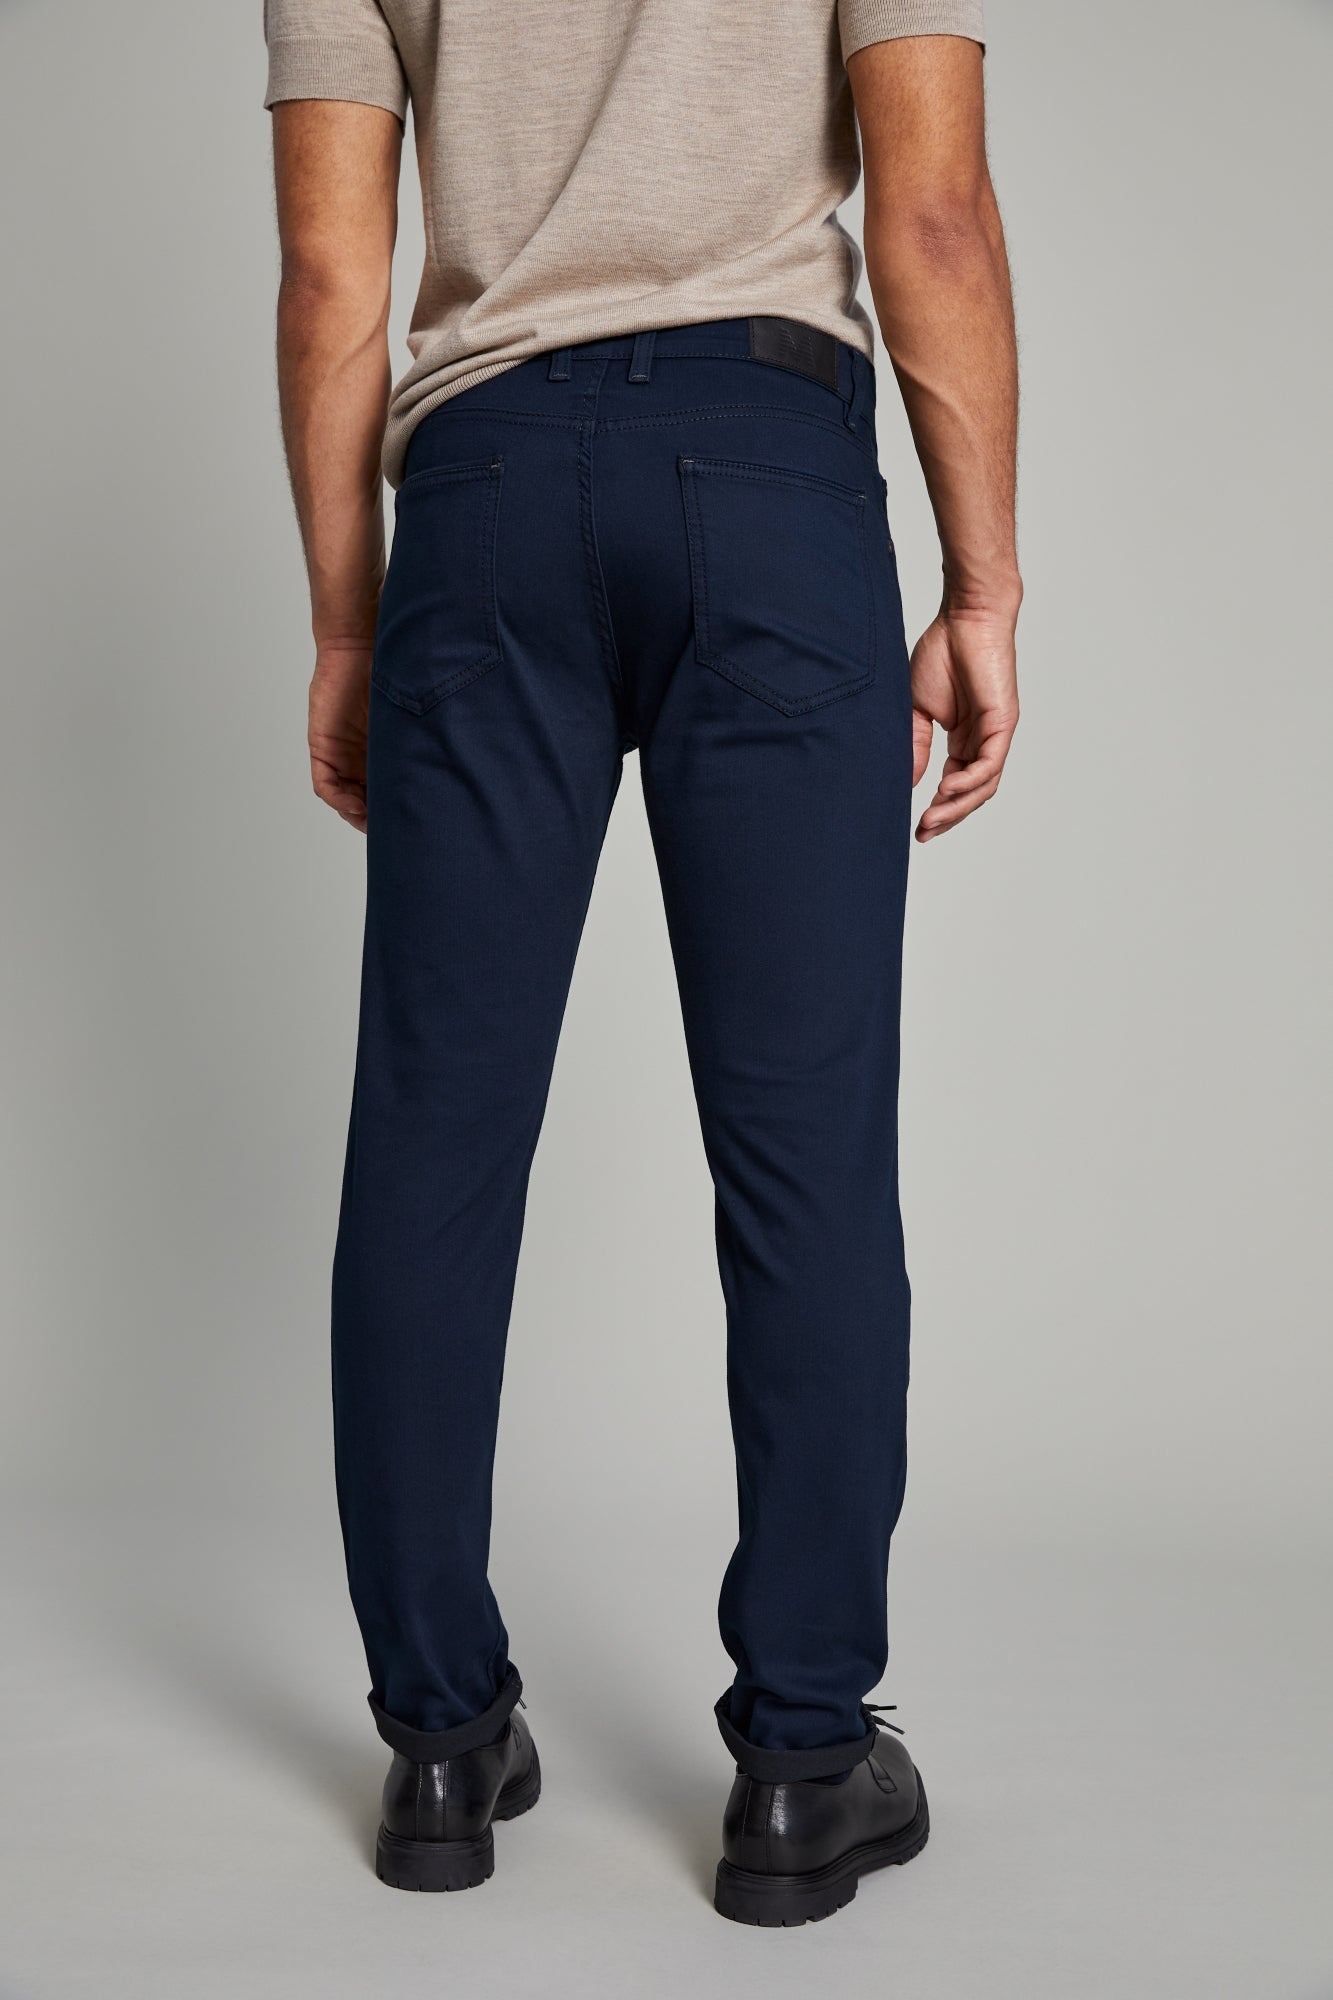 Pantalon habillé pour homme par Matinique - 30205683 194011 - Boutique Vvög, vêtements mode pour hommes